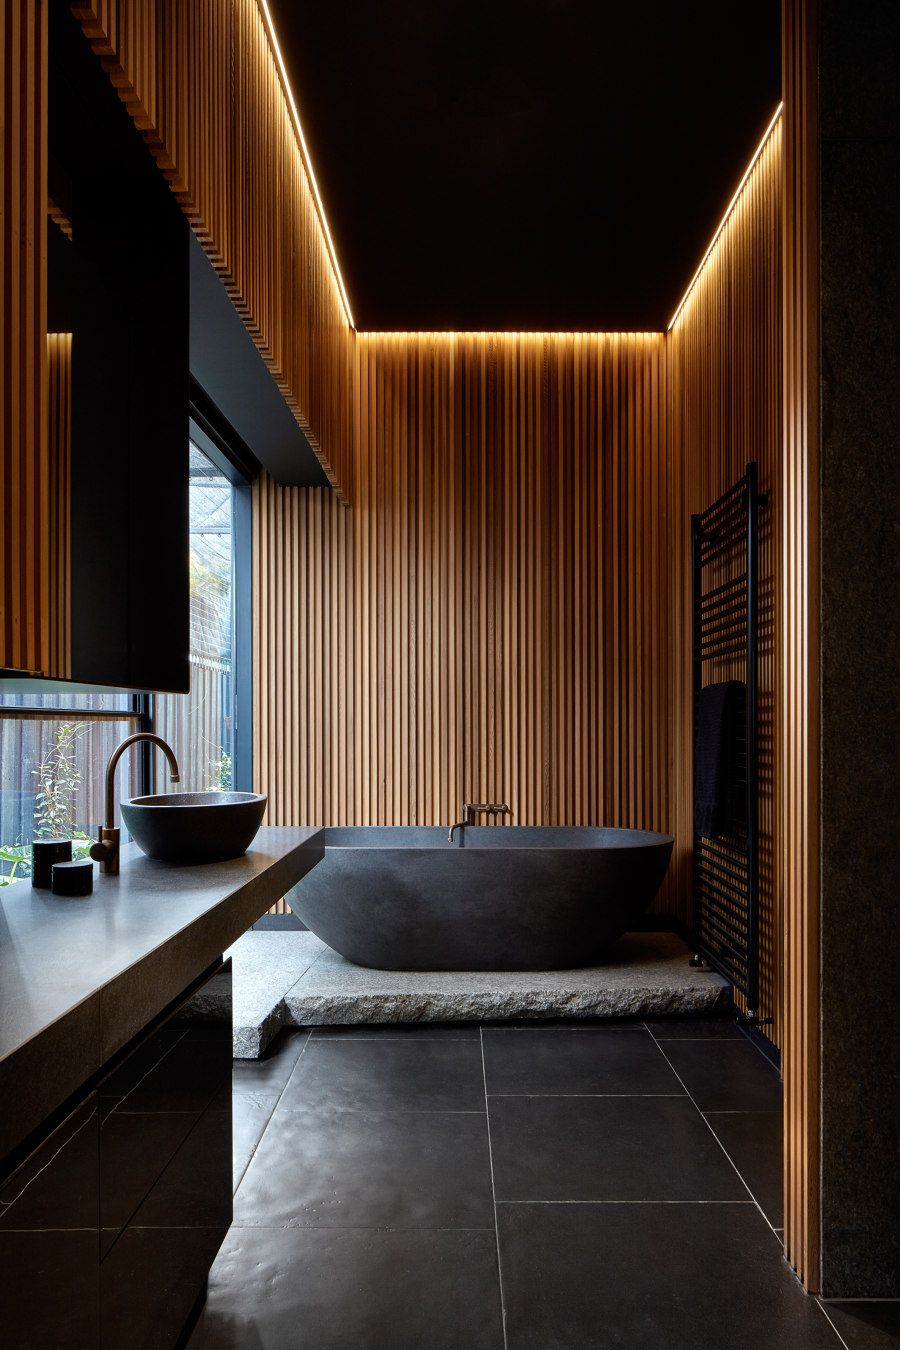 Stylish Bathroom Tiles Design Ideas for Modern Bathrooms